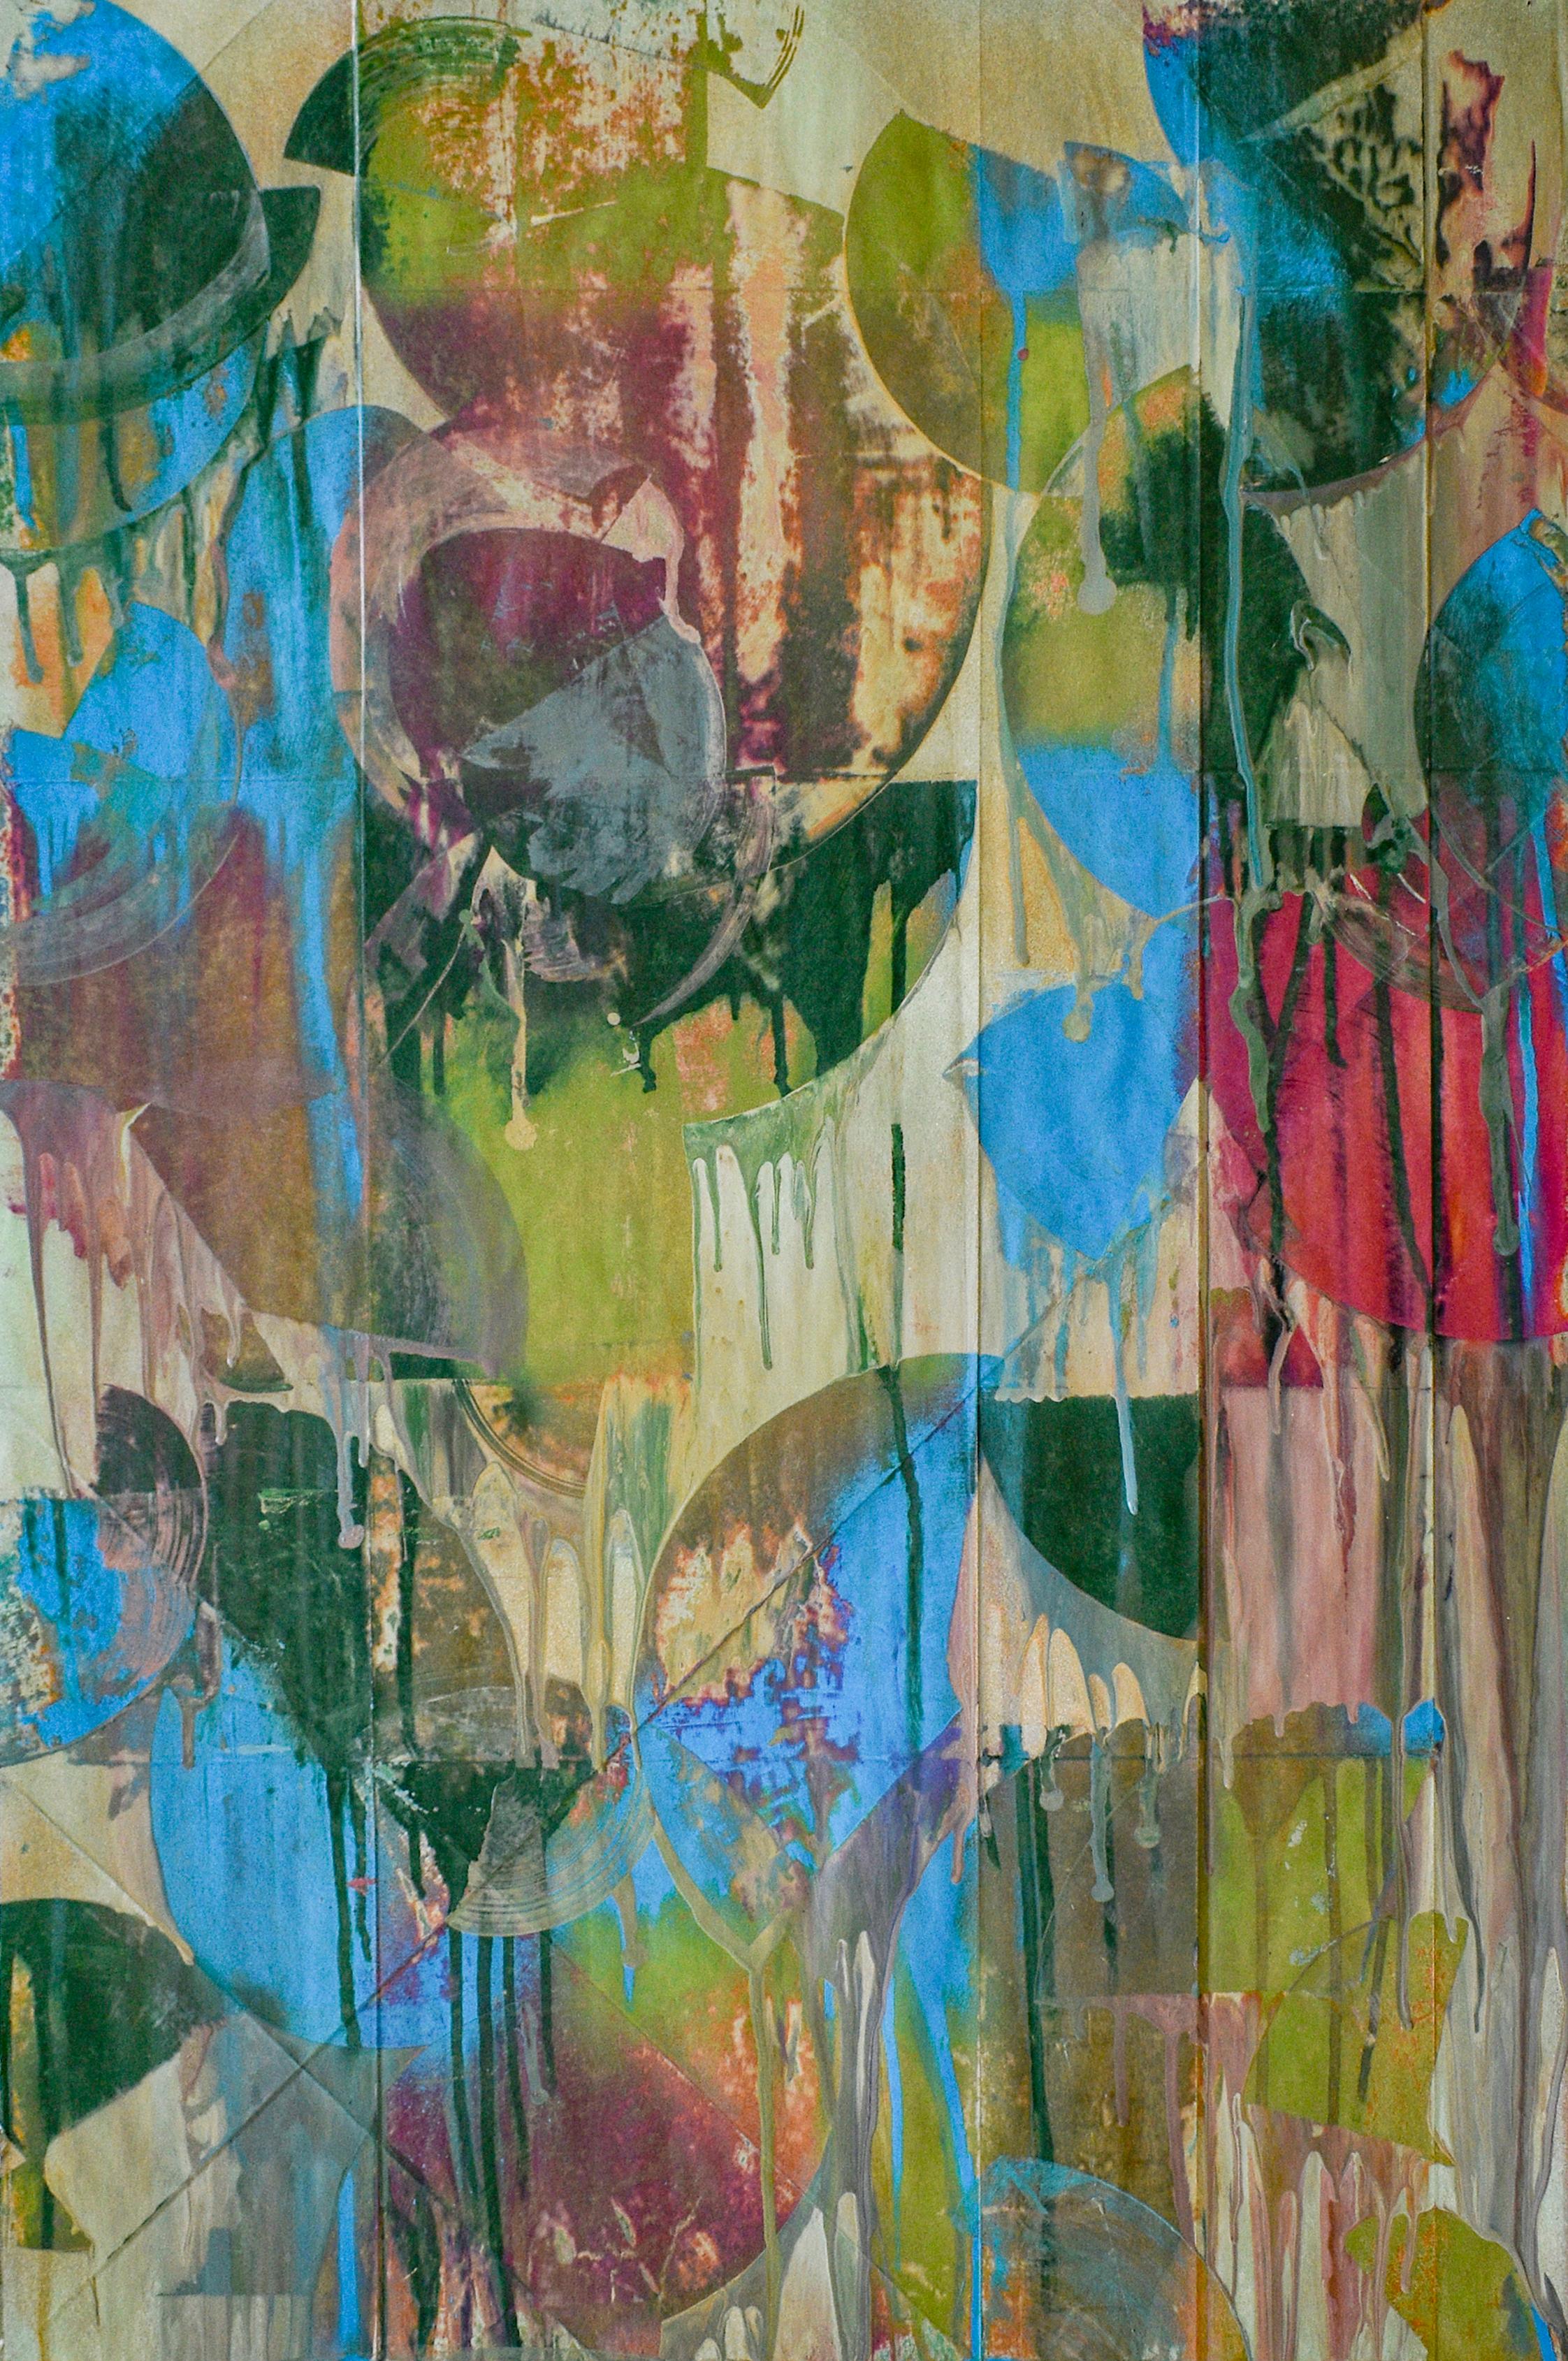 An Orgy of Delight (Abstraktives expressionistisches Gemälde in Grün, Blau und Fuschia)